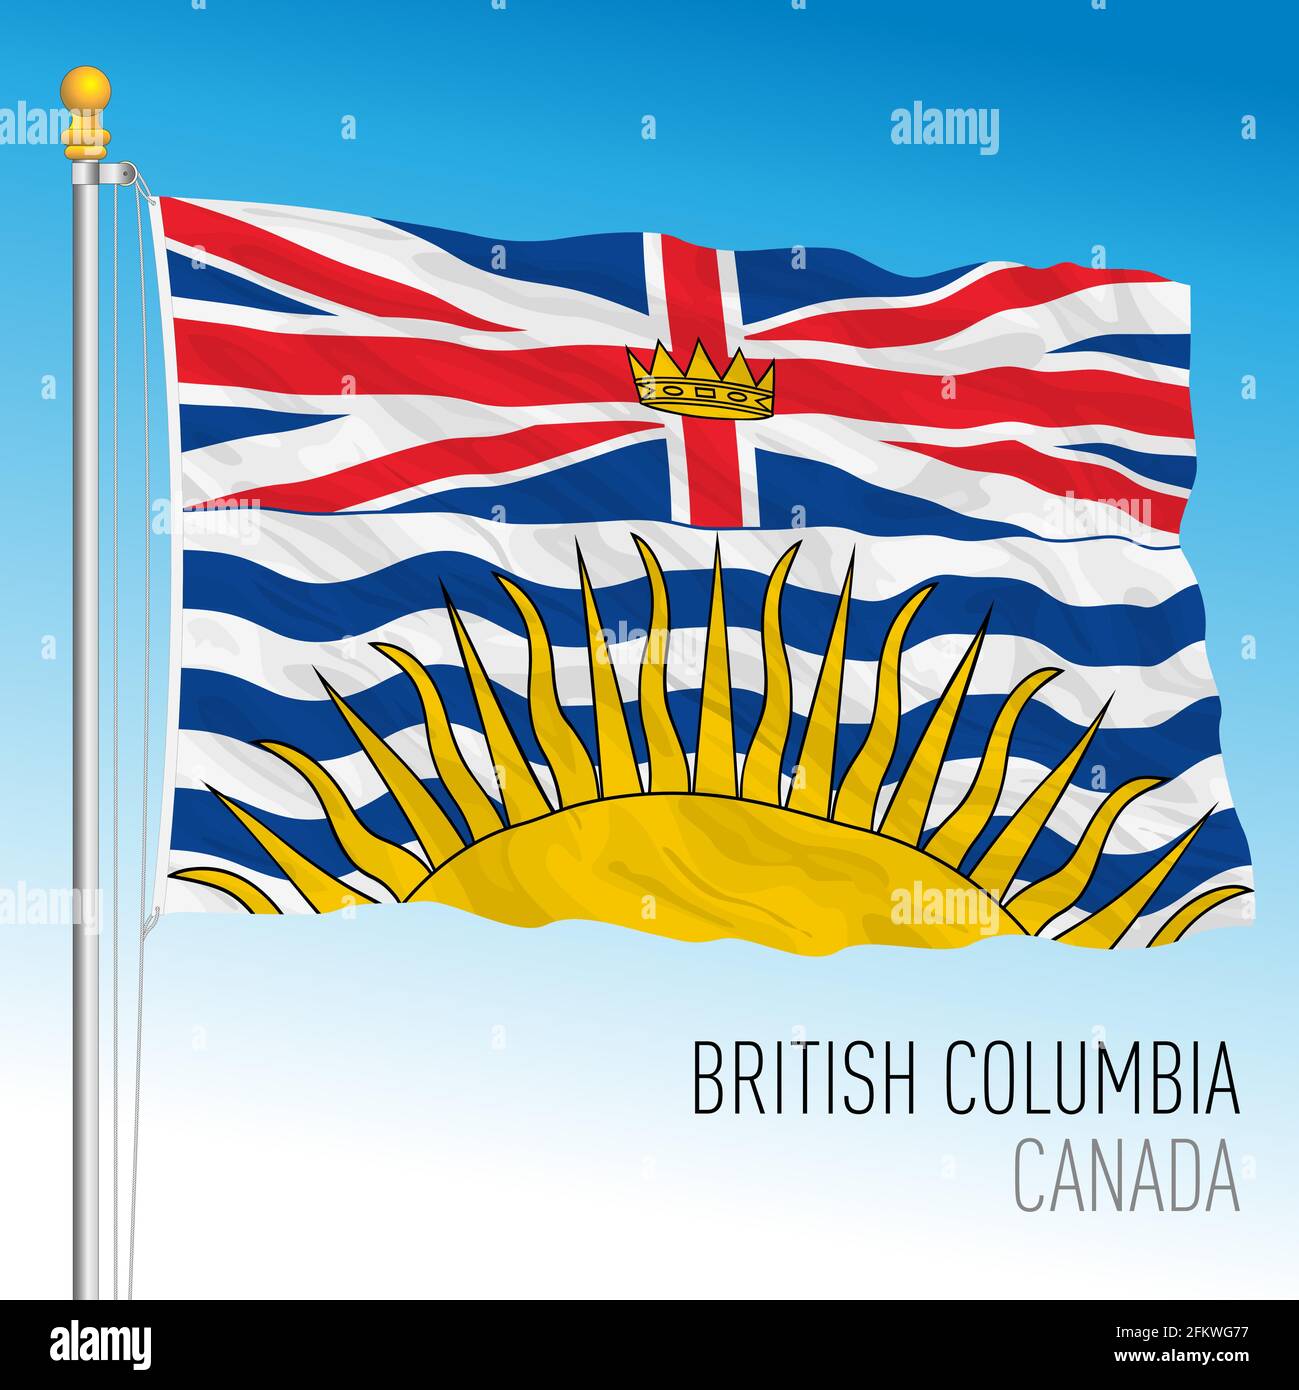 Territorialflagge und regionale Flagge von British Columbia, Kanada, nordamerikanisches Land, Vektorgrafik Stock Vektor